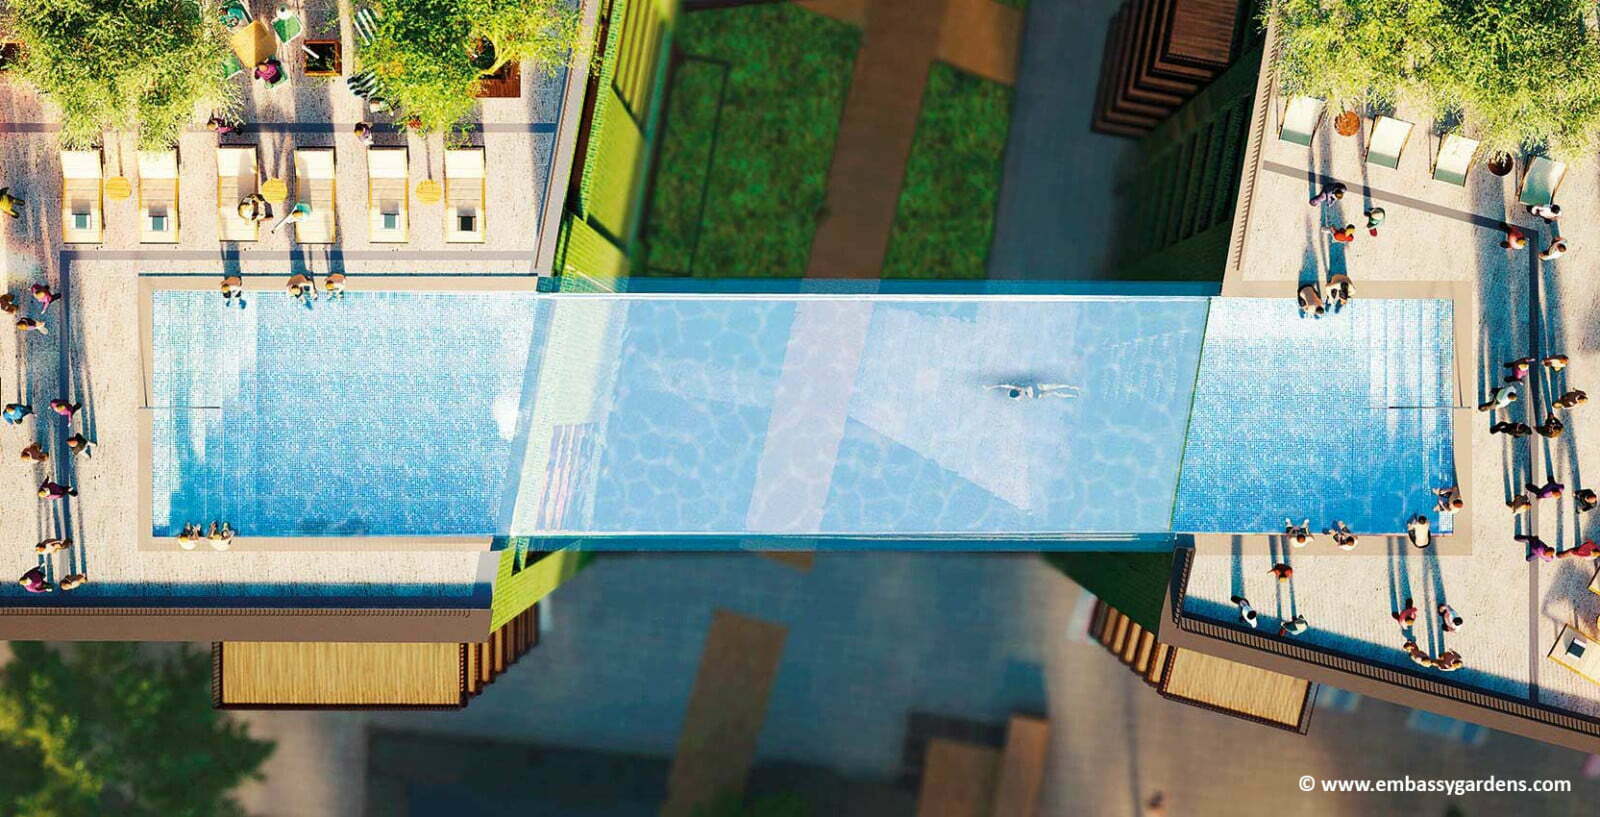 25-Meter-Pool zwischen zwei Gebäuden: Würden Sie darin schwimmen?